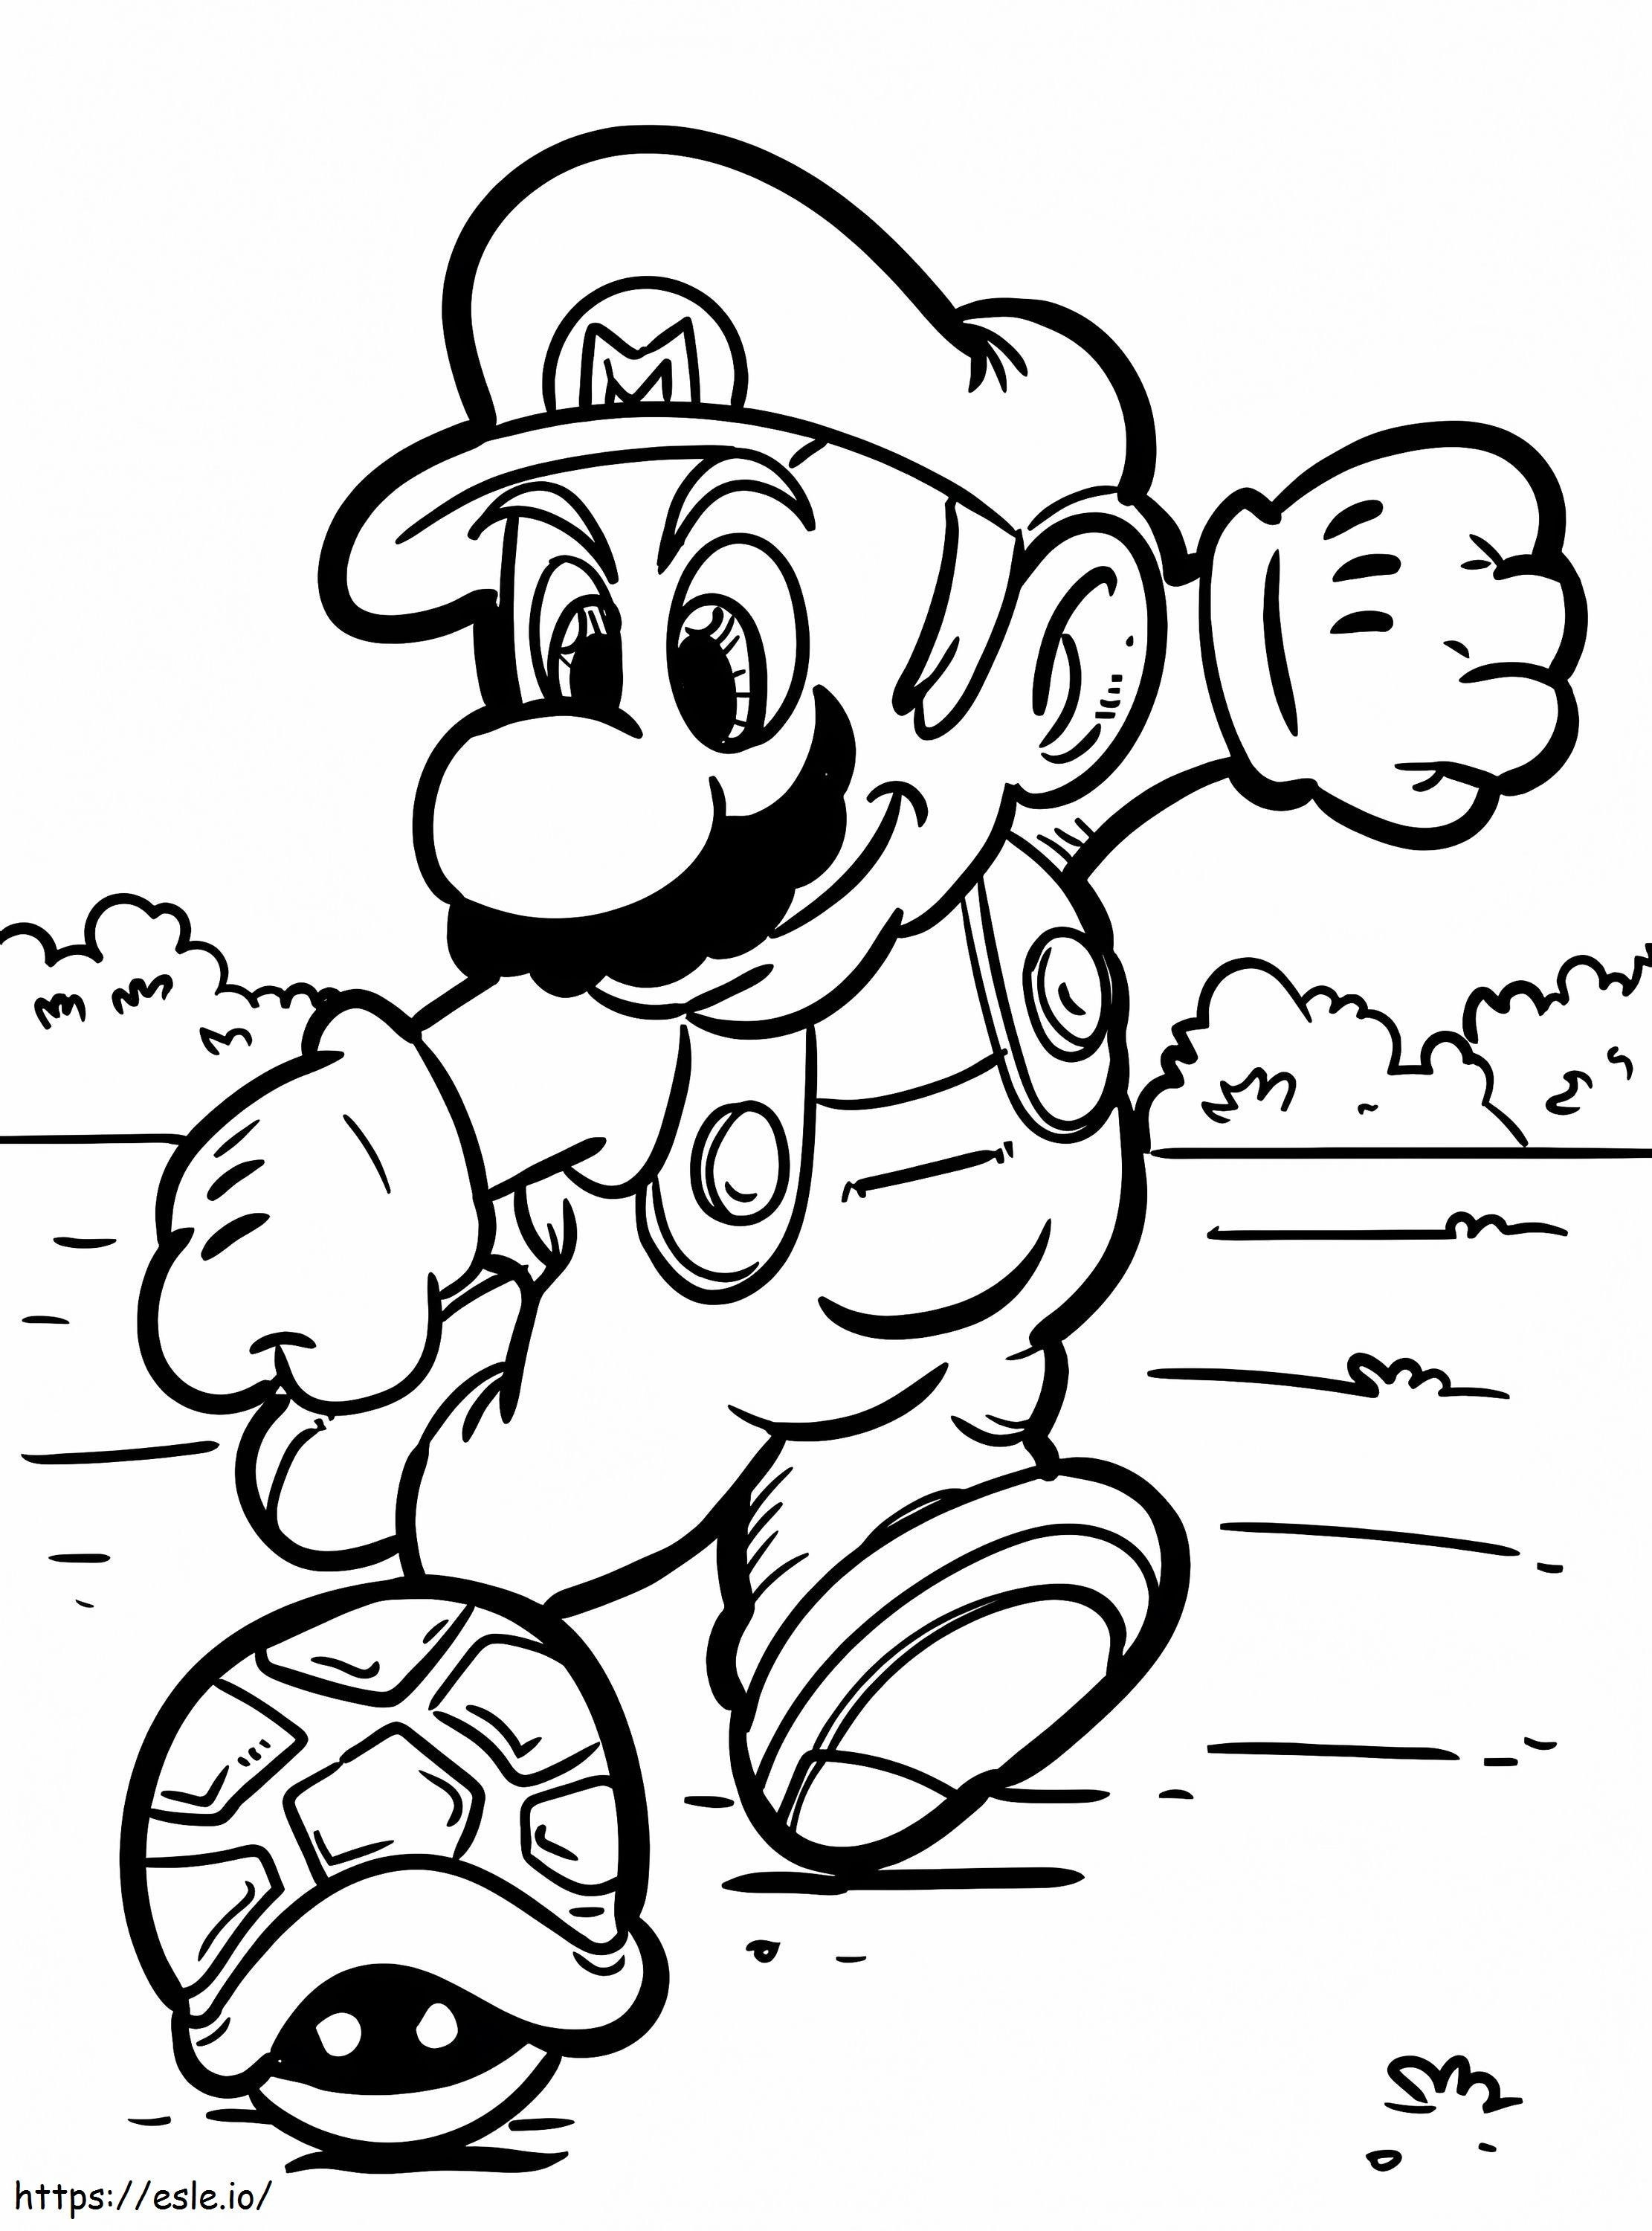 Mario Kicks coloring page